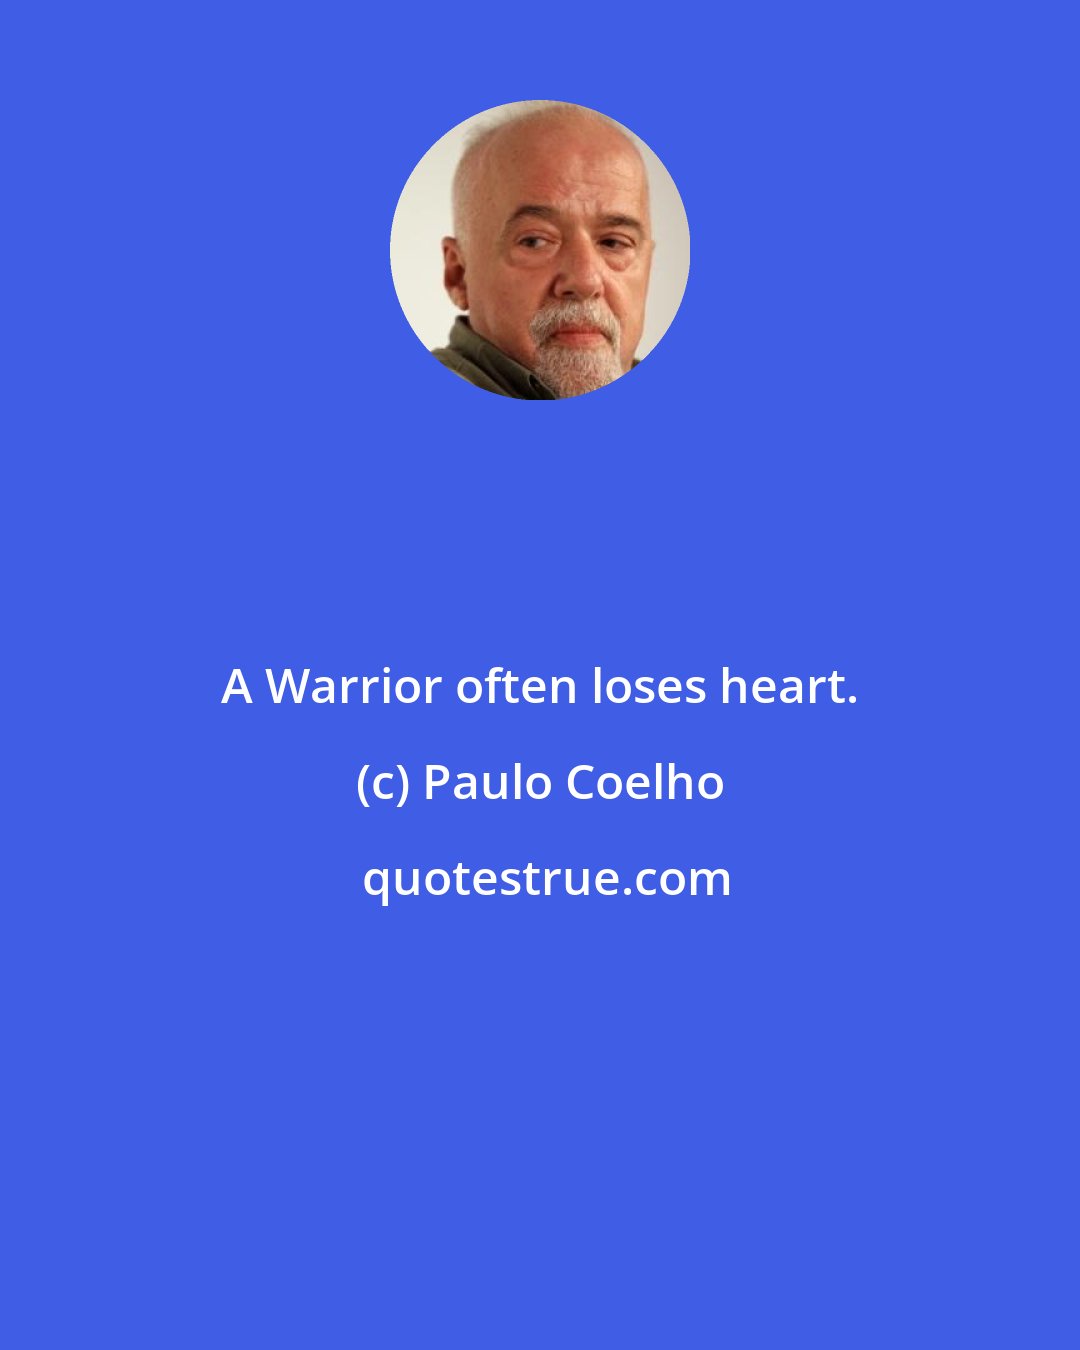 Paulo Coelho: A Warrior often loses heart.